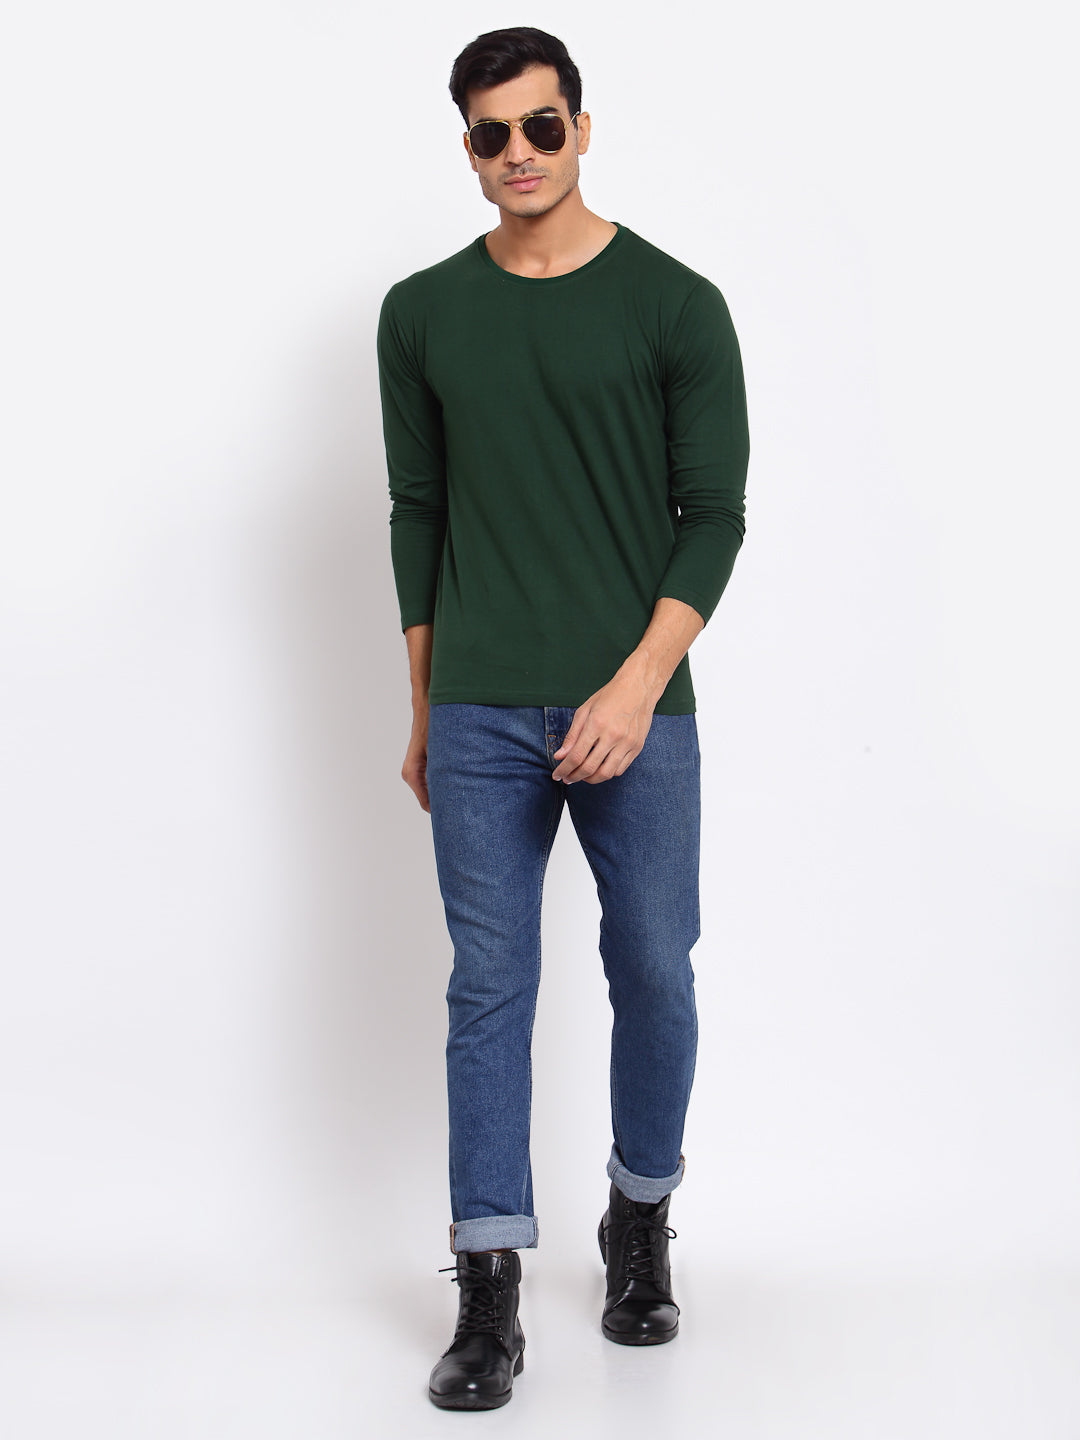 Plain Green Full Sleeves T-Shirt